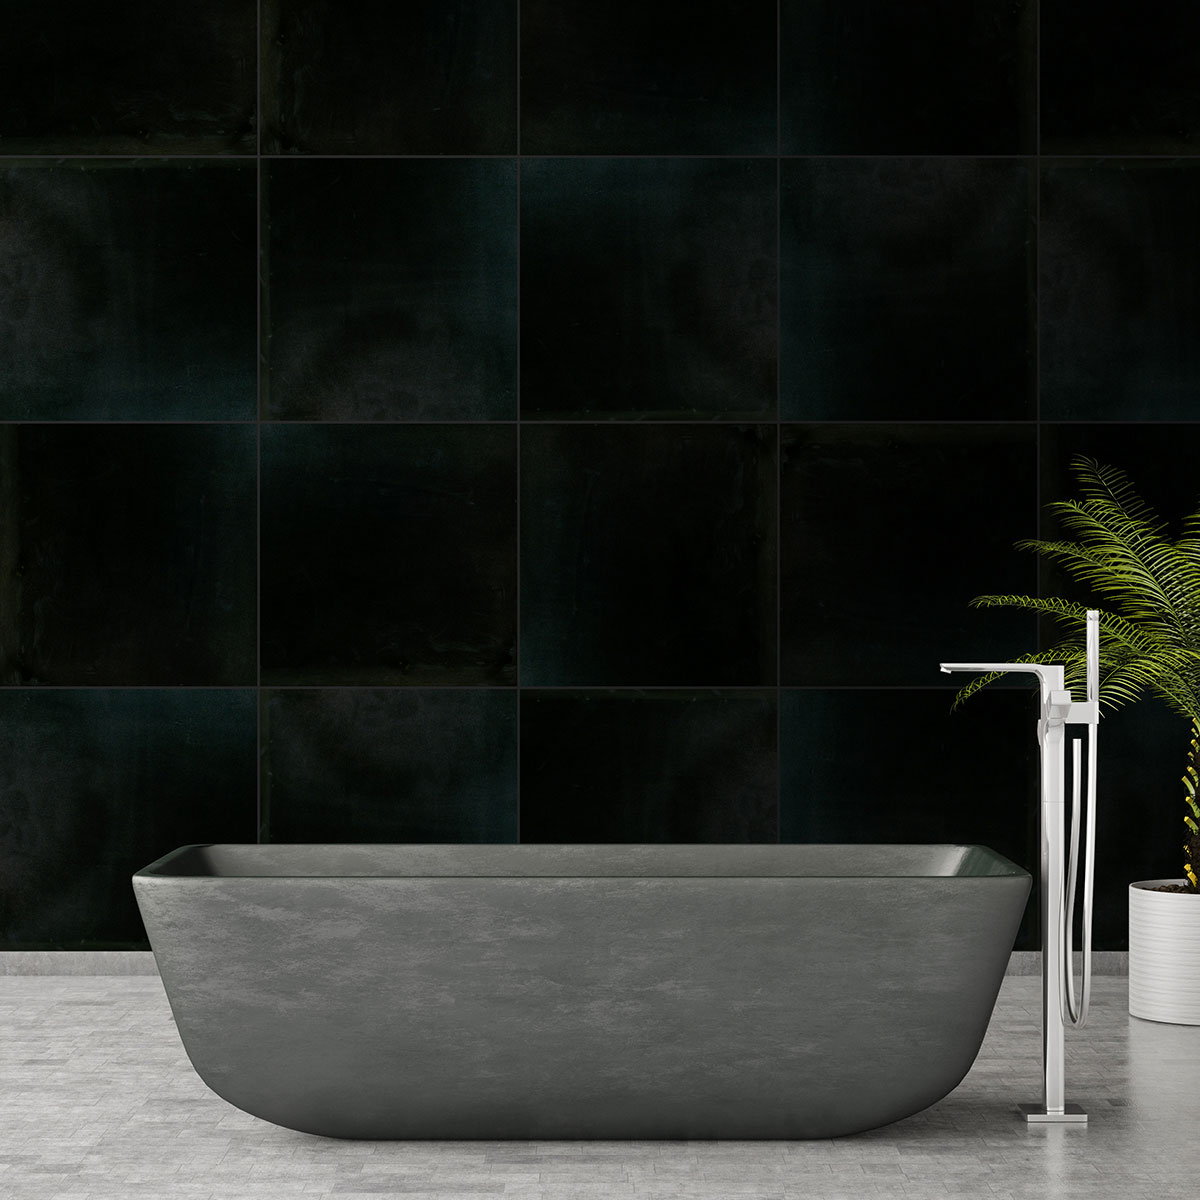  Premium Black Granite Countertop in Bathroom